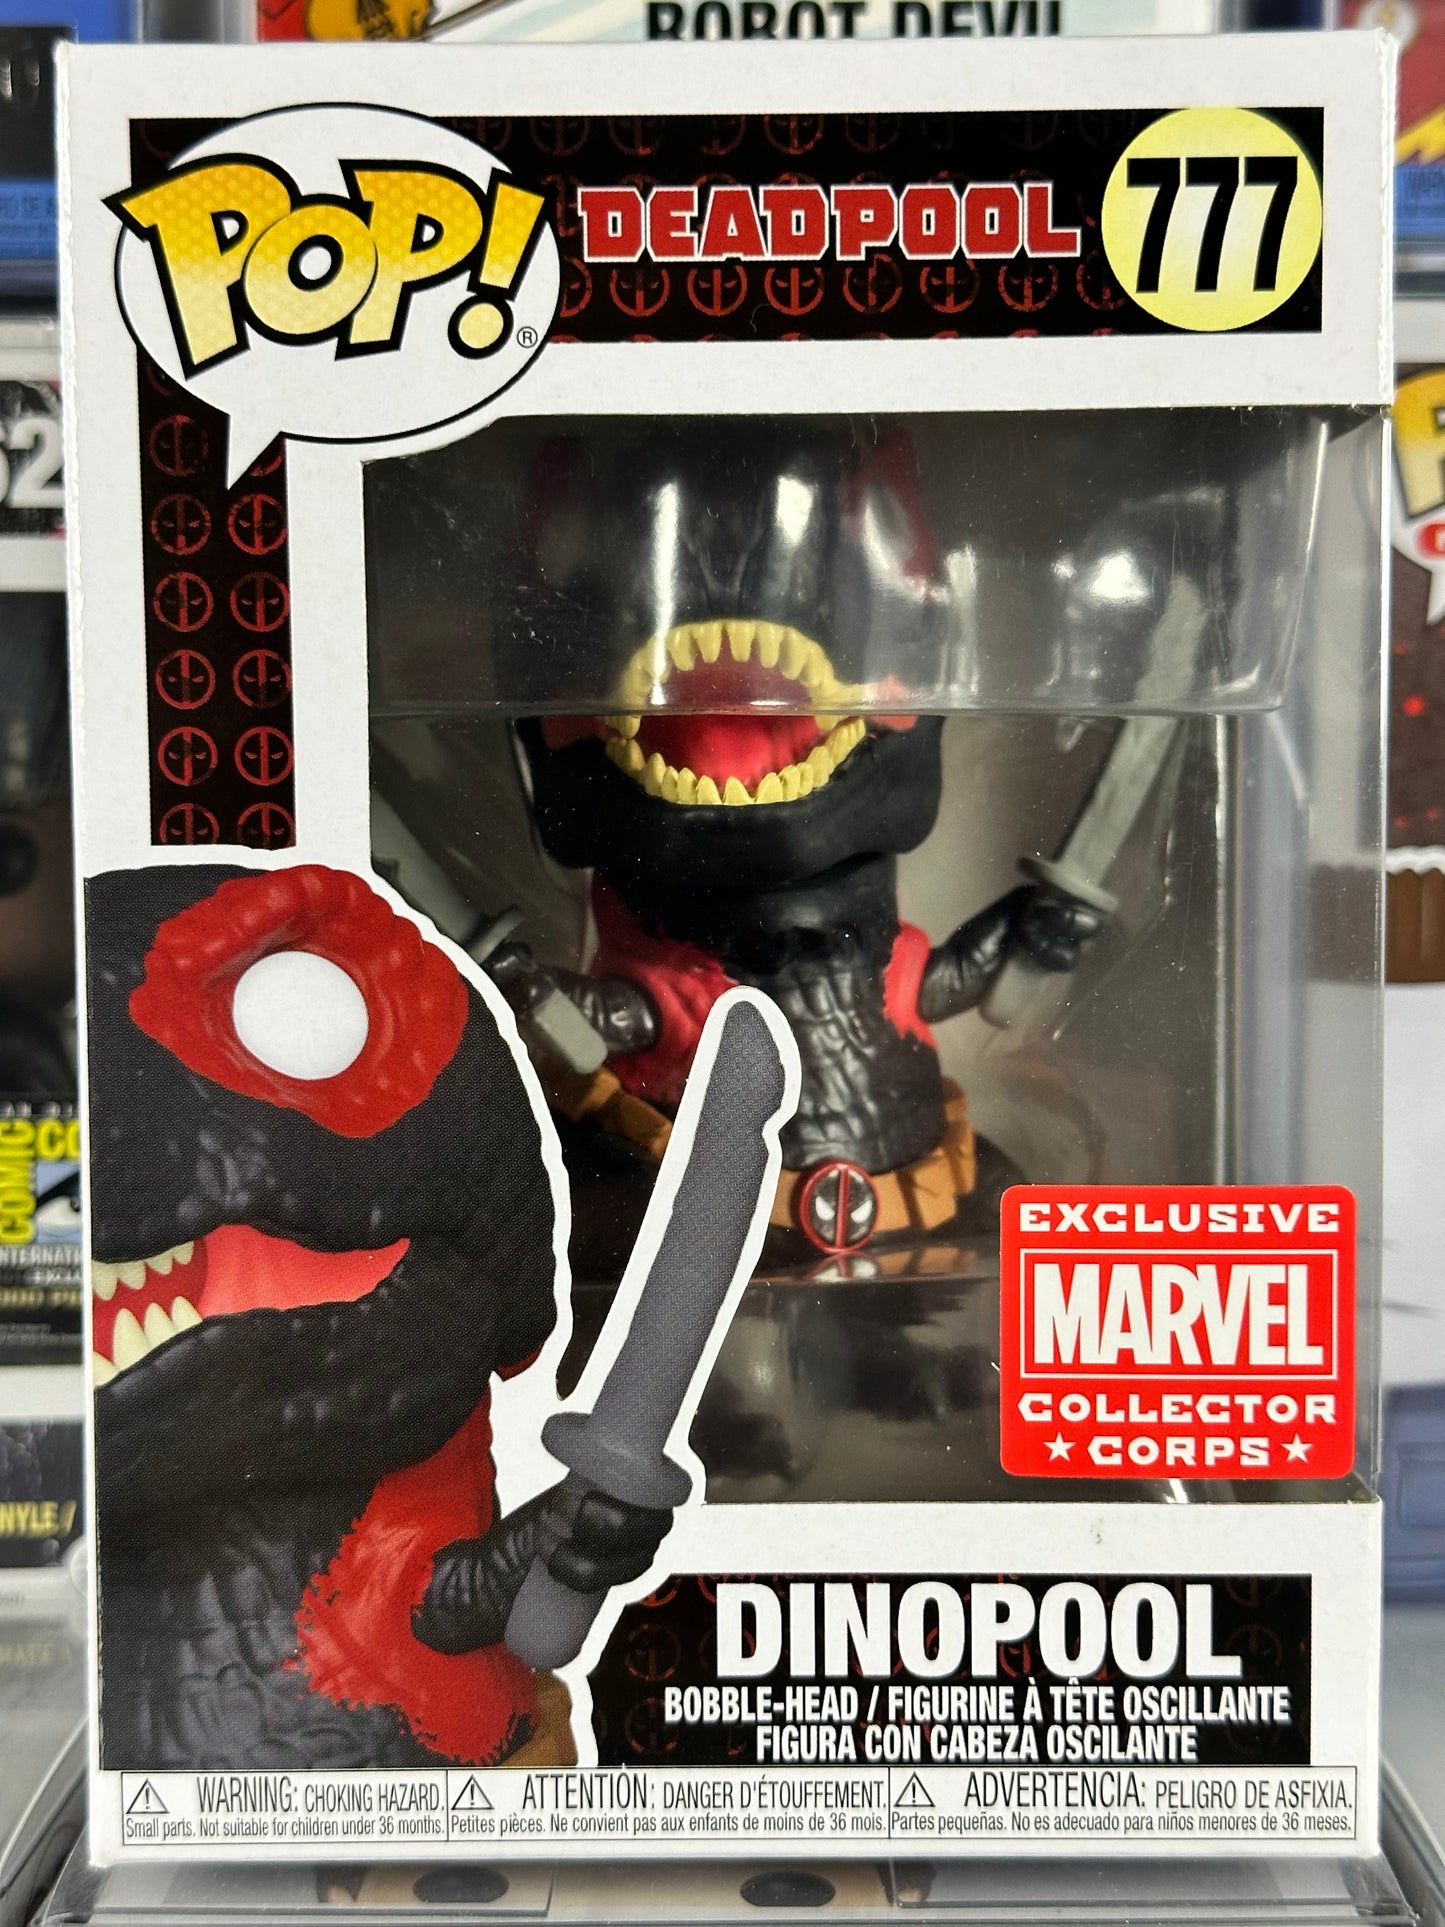 Marvel Deadpool - Dinopool (Black) (777) Marvel Collectors Corps Exclusive